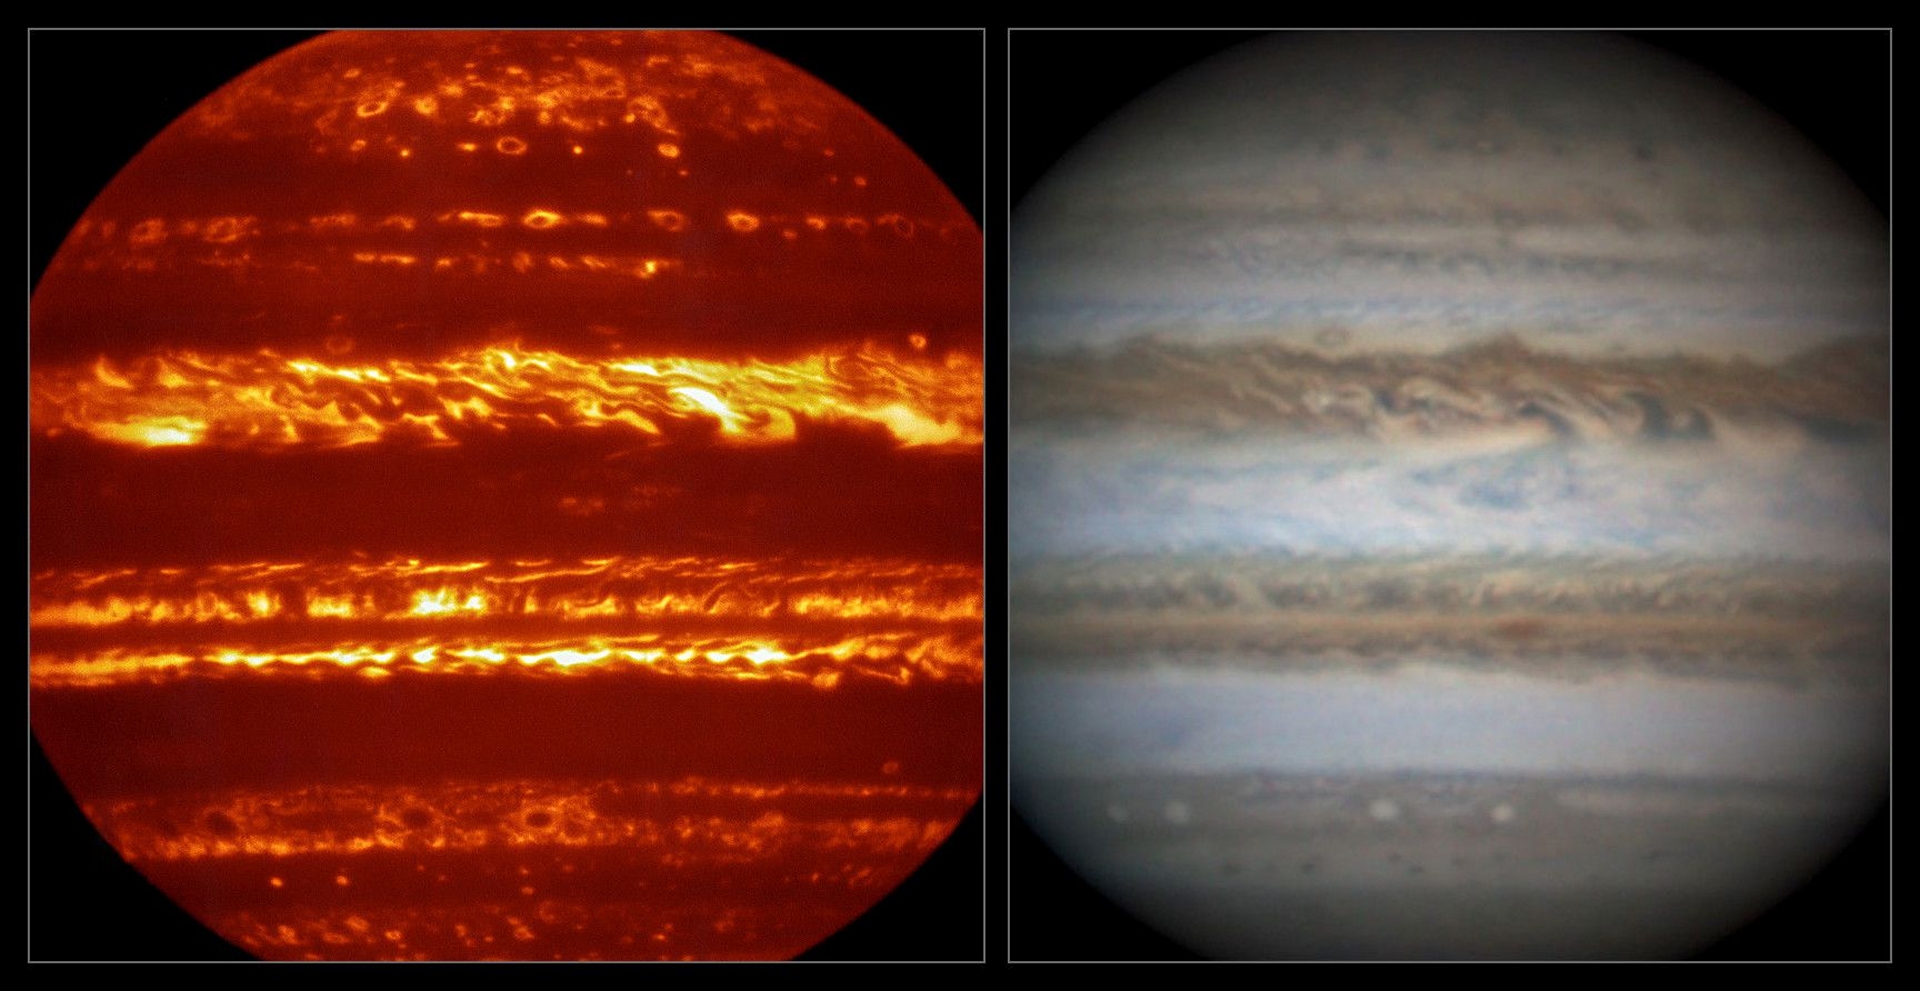 La sonde Juno, de la Nasa, arrive en orbite autour de Jupiter pour une longue mission. C’est l’occasion de photographier ou au moins d’observer la géante, comme l’ont fait le VLT, dans l’infrarouge, avec l’instrument Visir (à gauche), et l’astronome amateur Damian Peach, dans le visible (à droite). © Eso, L. N. Fletcher, Damian Peach